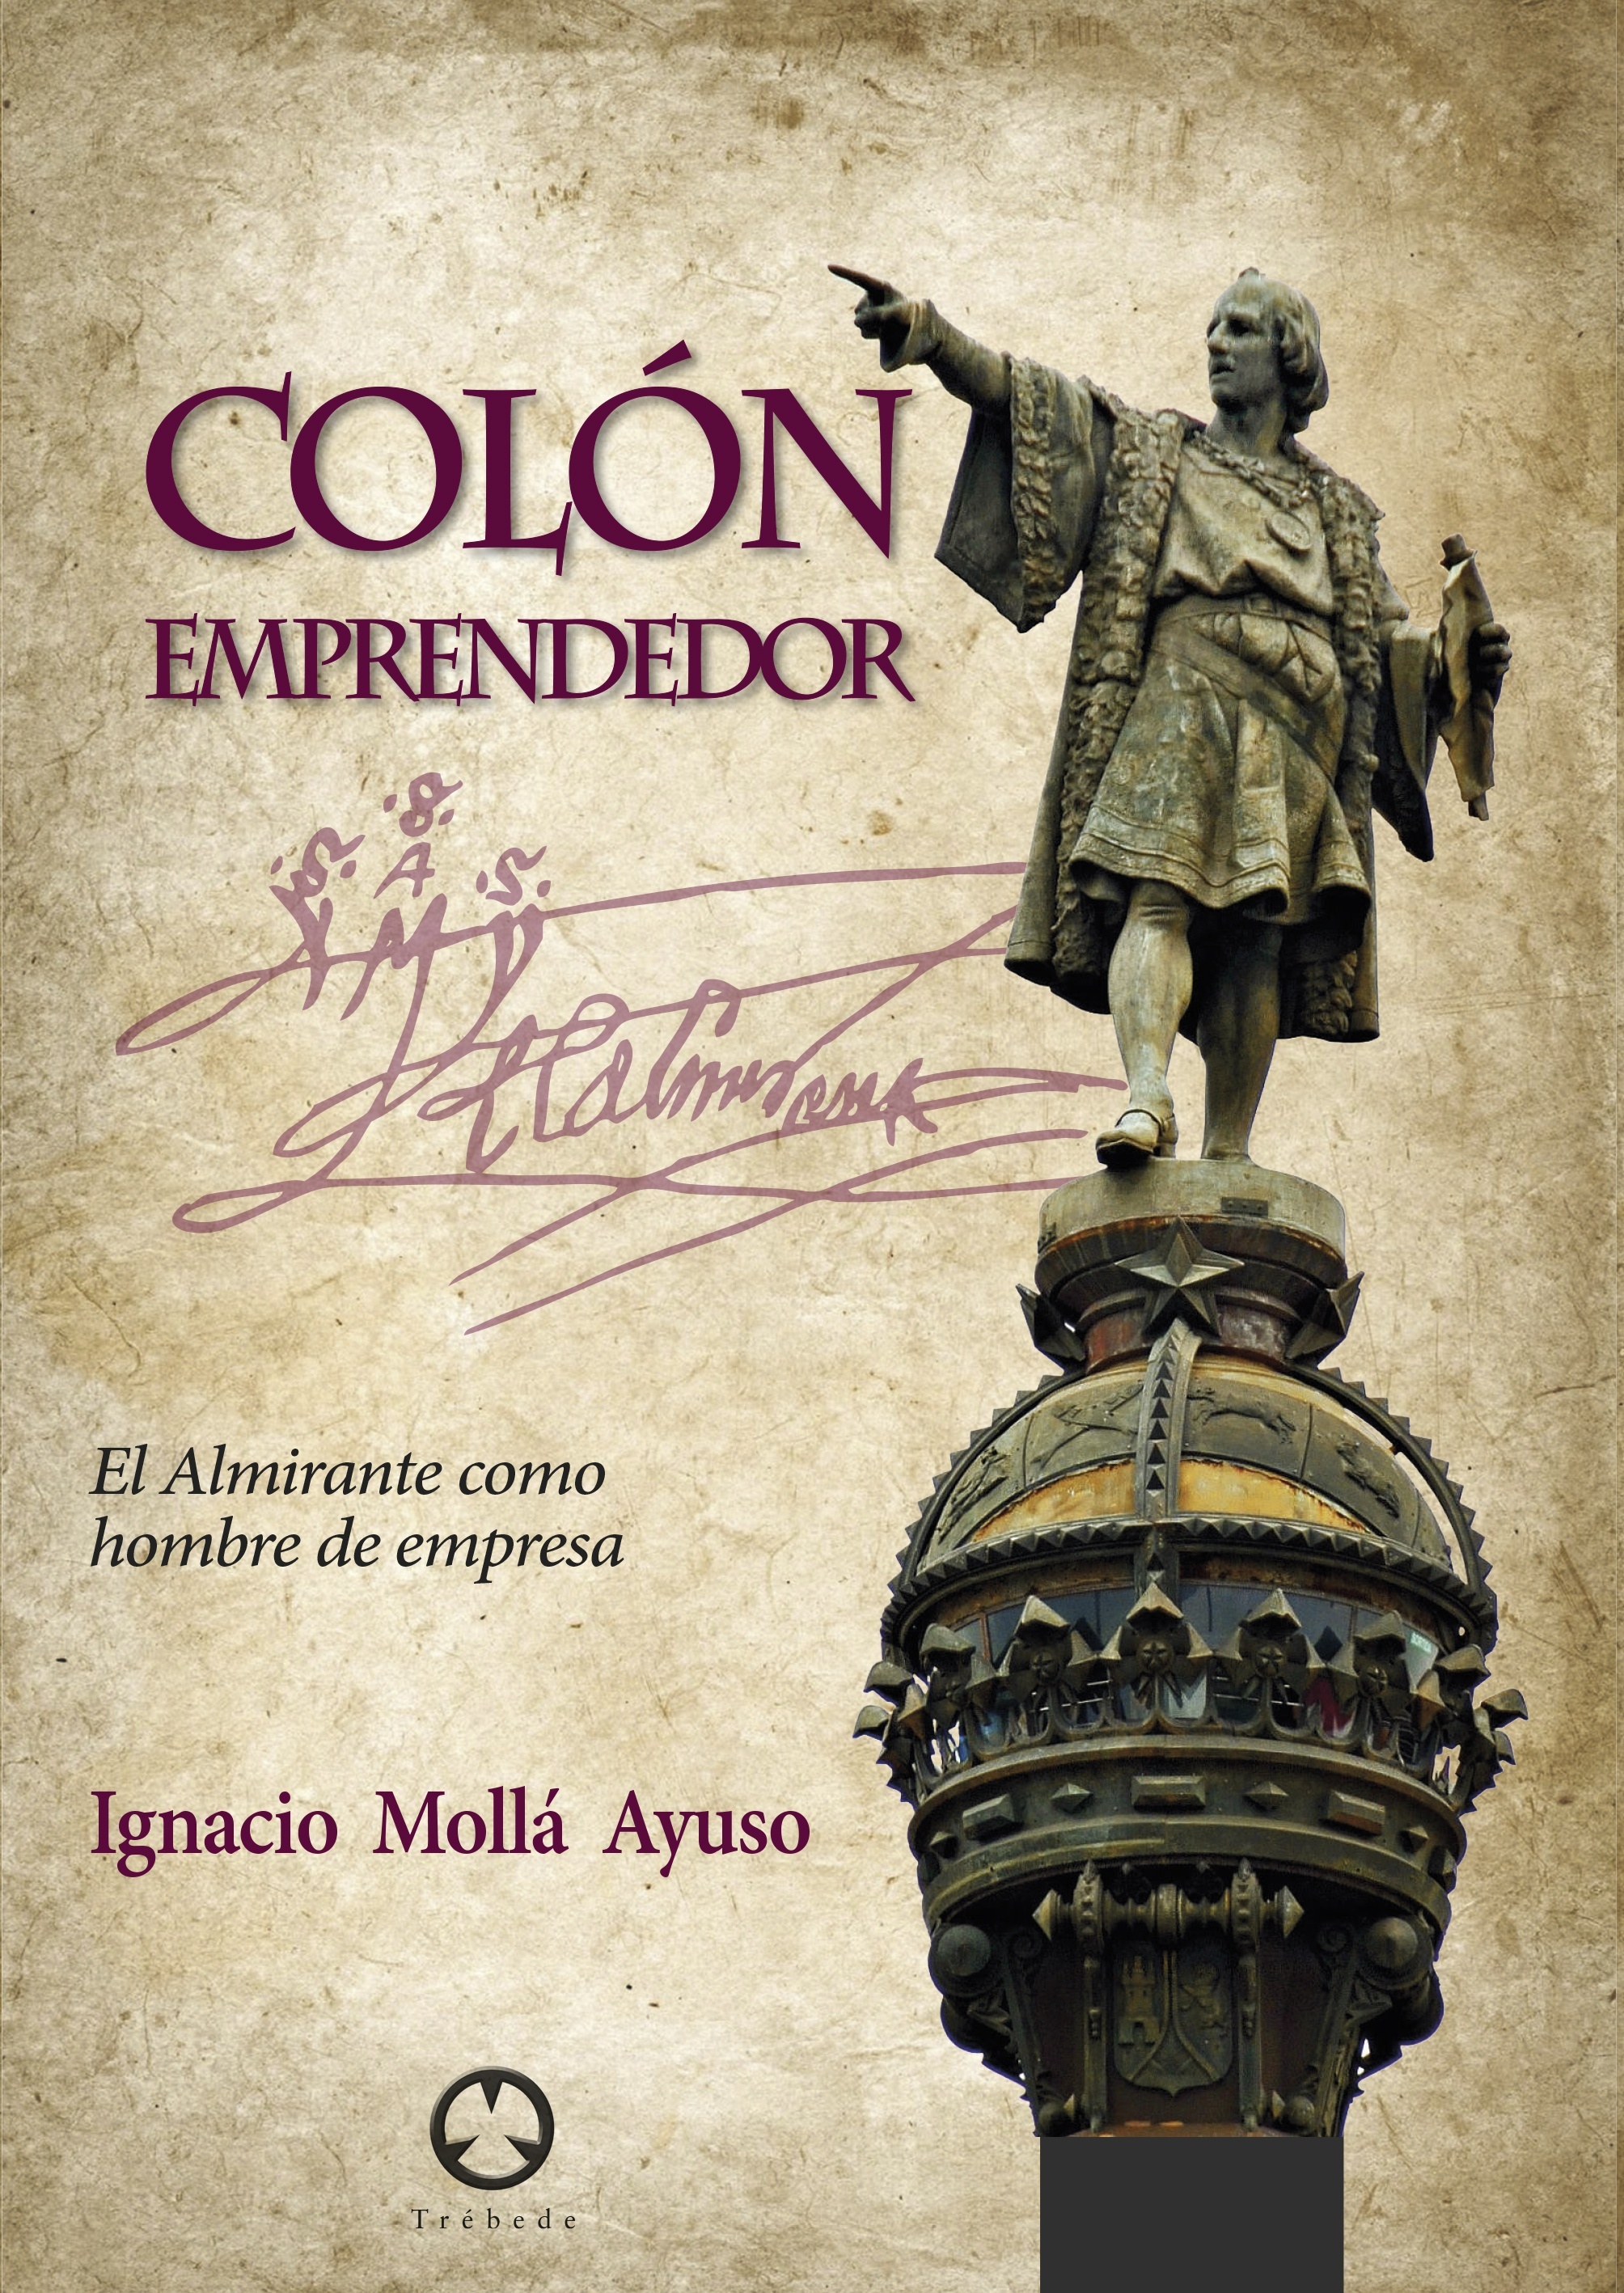 Colón emprendedor "El Almirante como hombre de empresa"